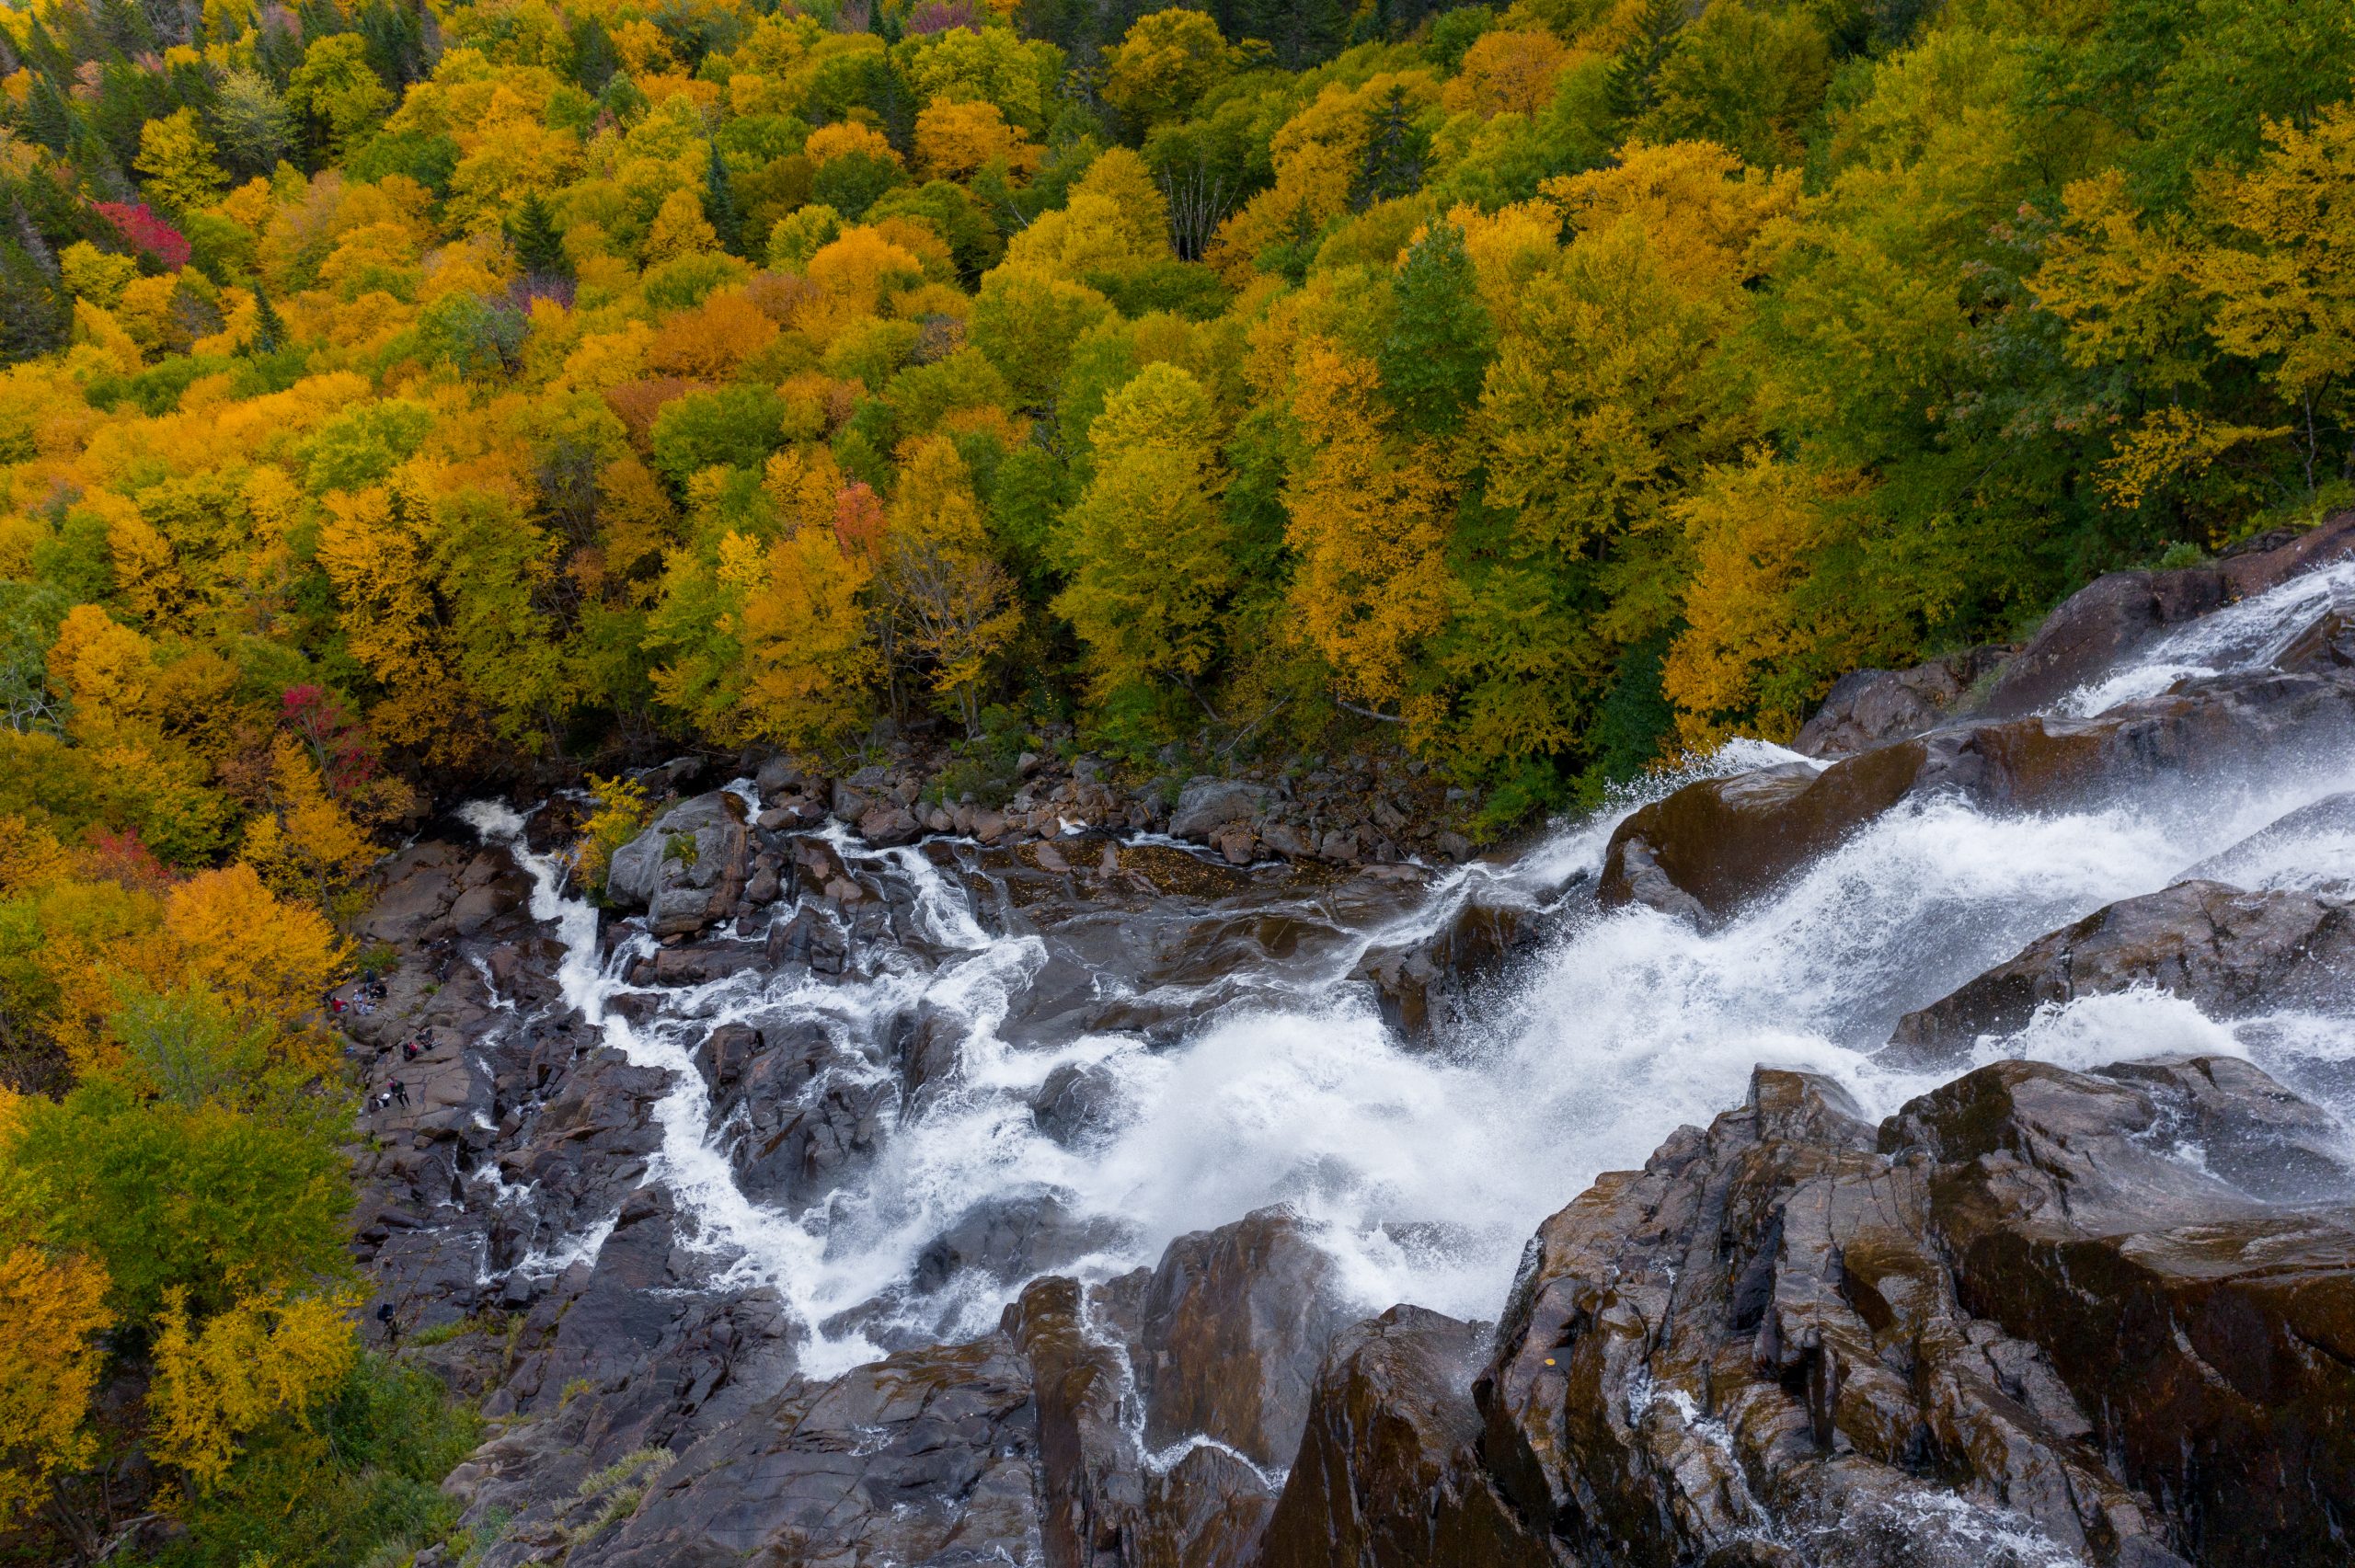 Photo de la Chute Delaney en automne, chute sur rochers entourée d'arbres et de la nature verdoyante offerte par la Vallée et visible via les sentiers de randonnée pédestre.